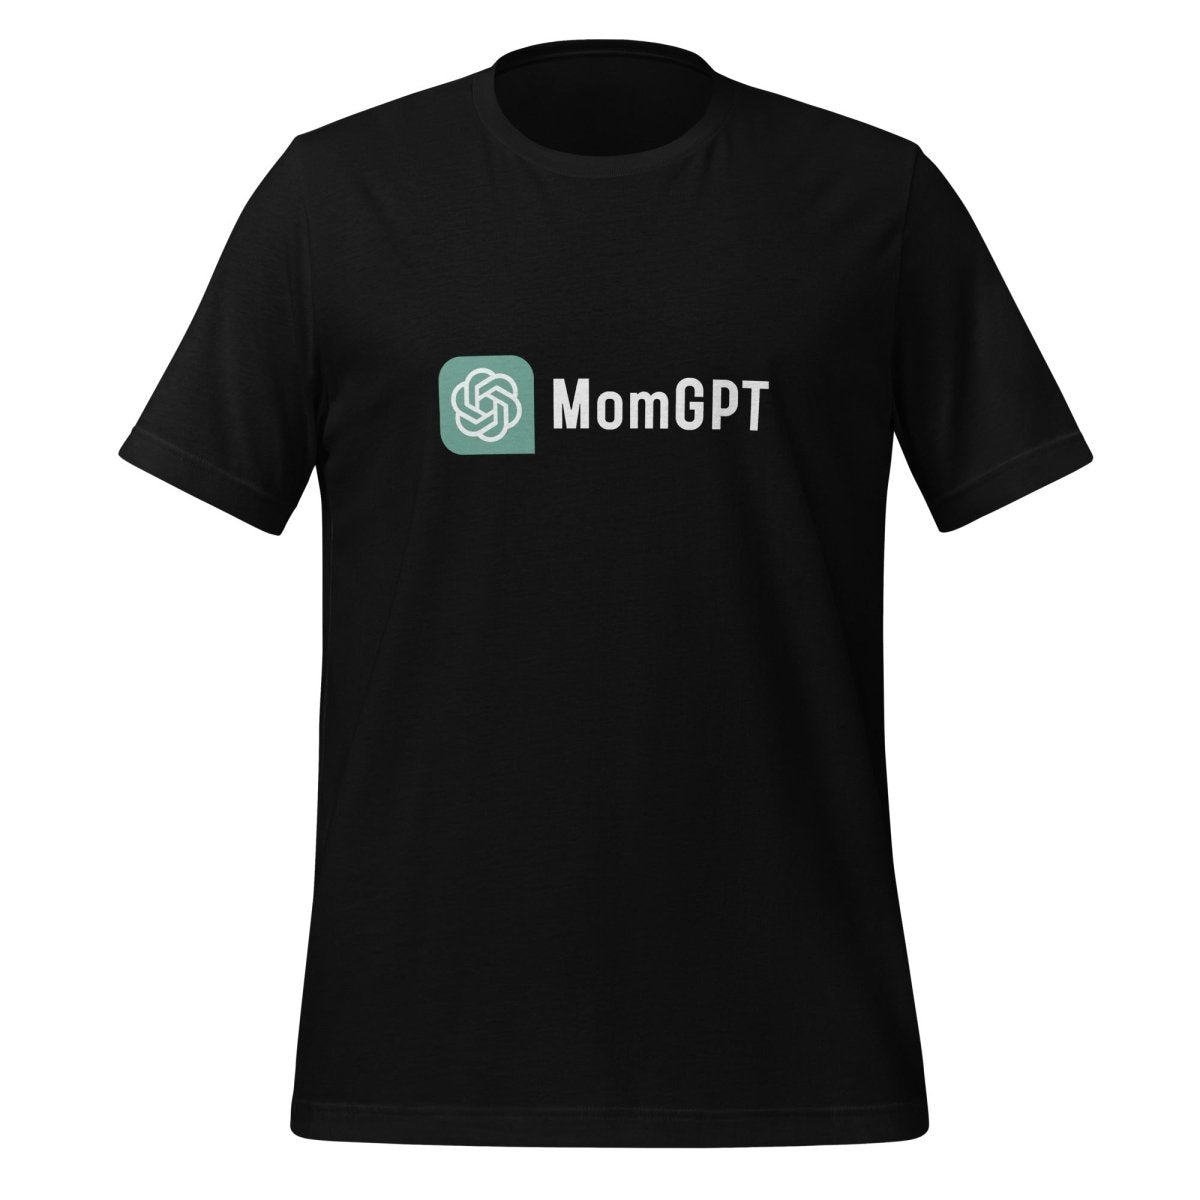 MomGPT T - Shirt (unisex) - Black - AI Store